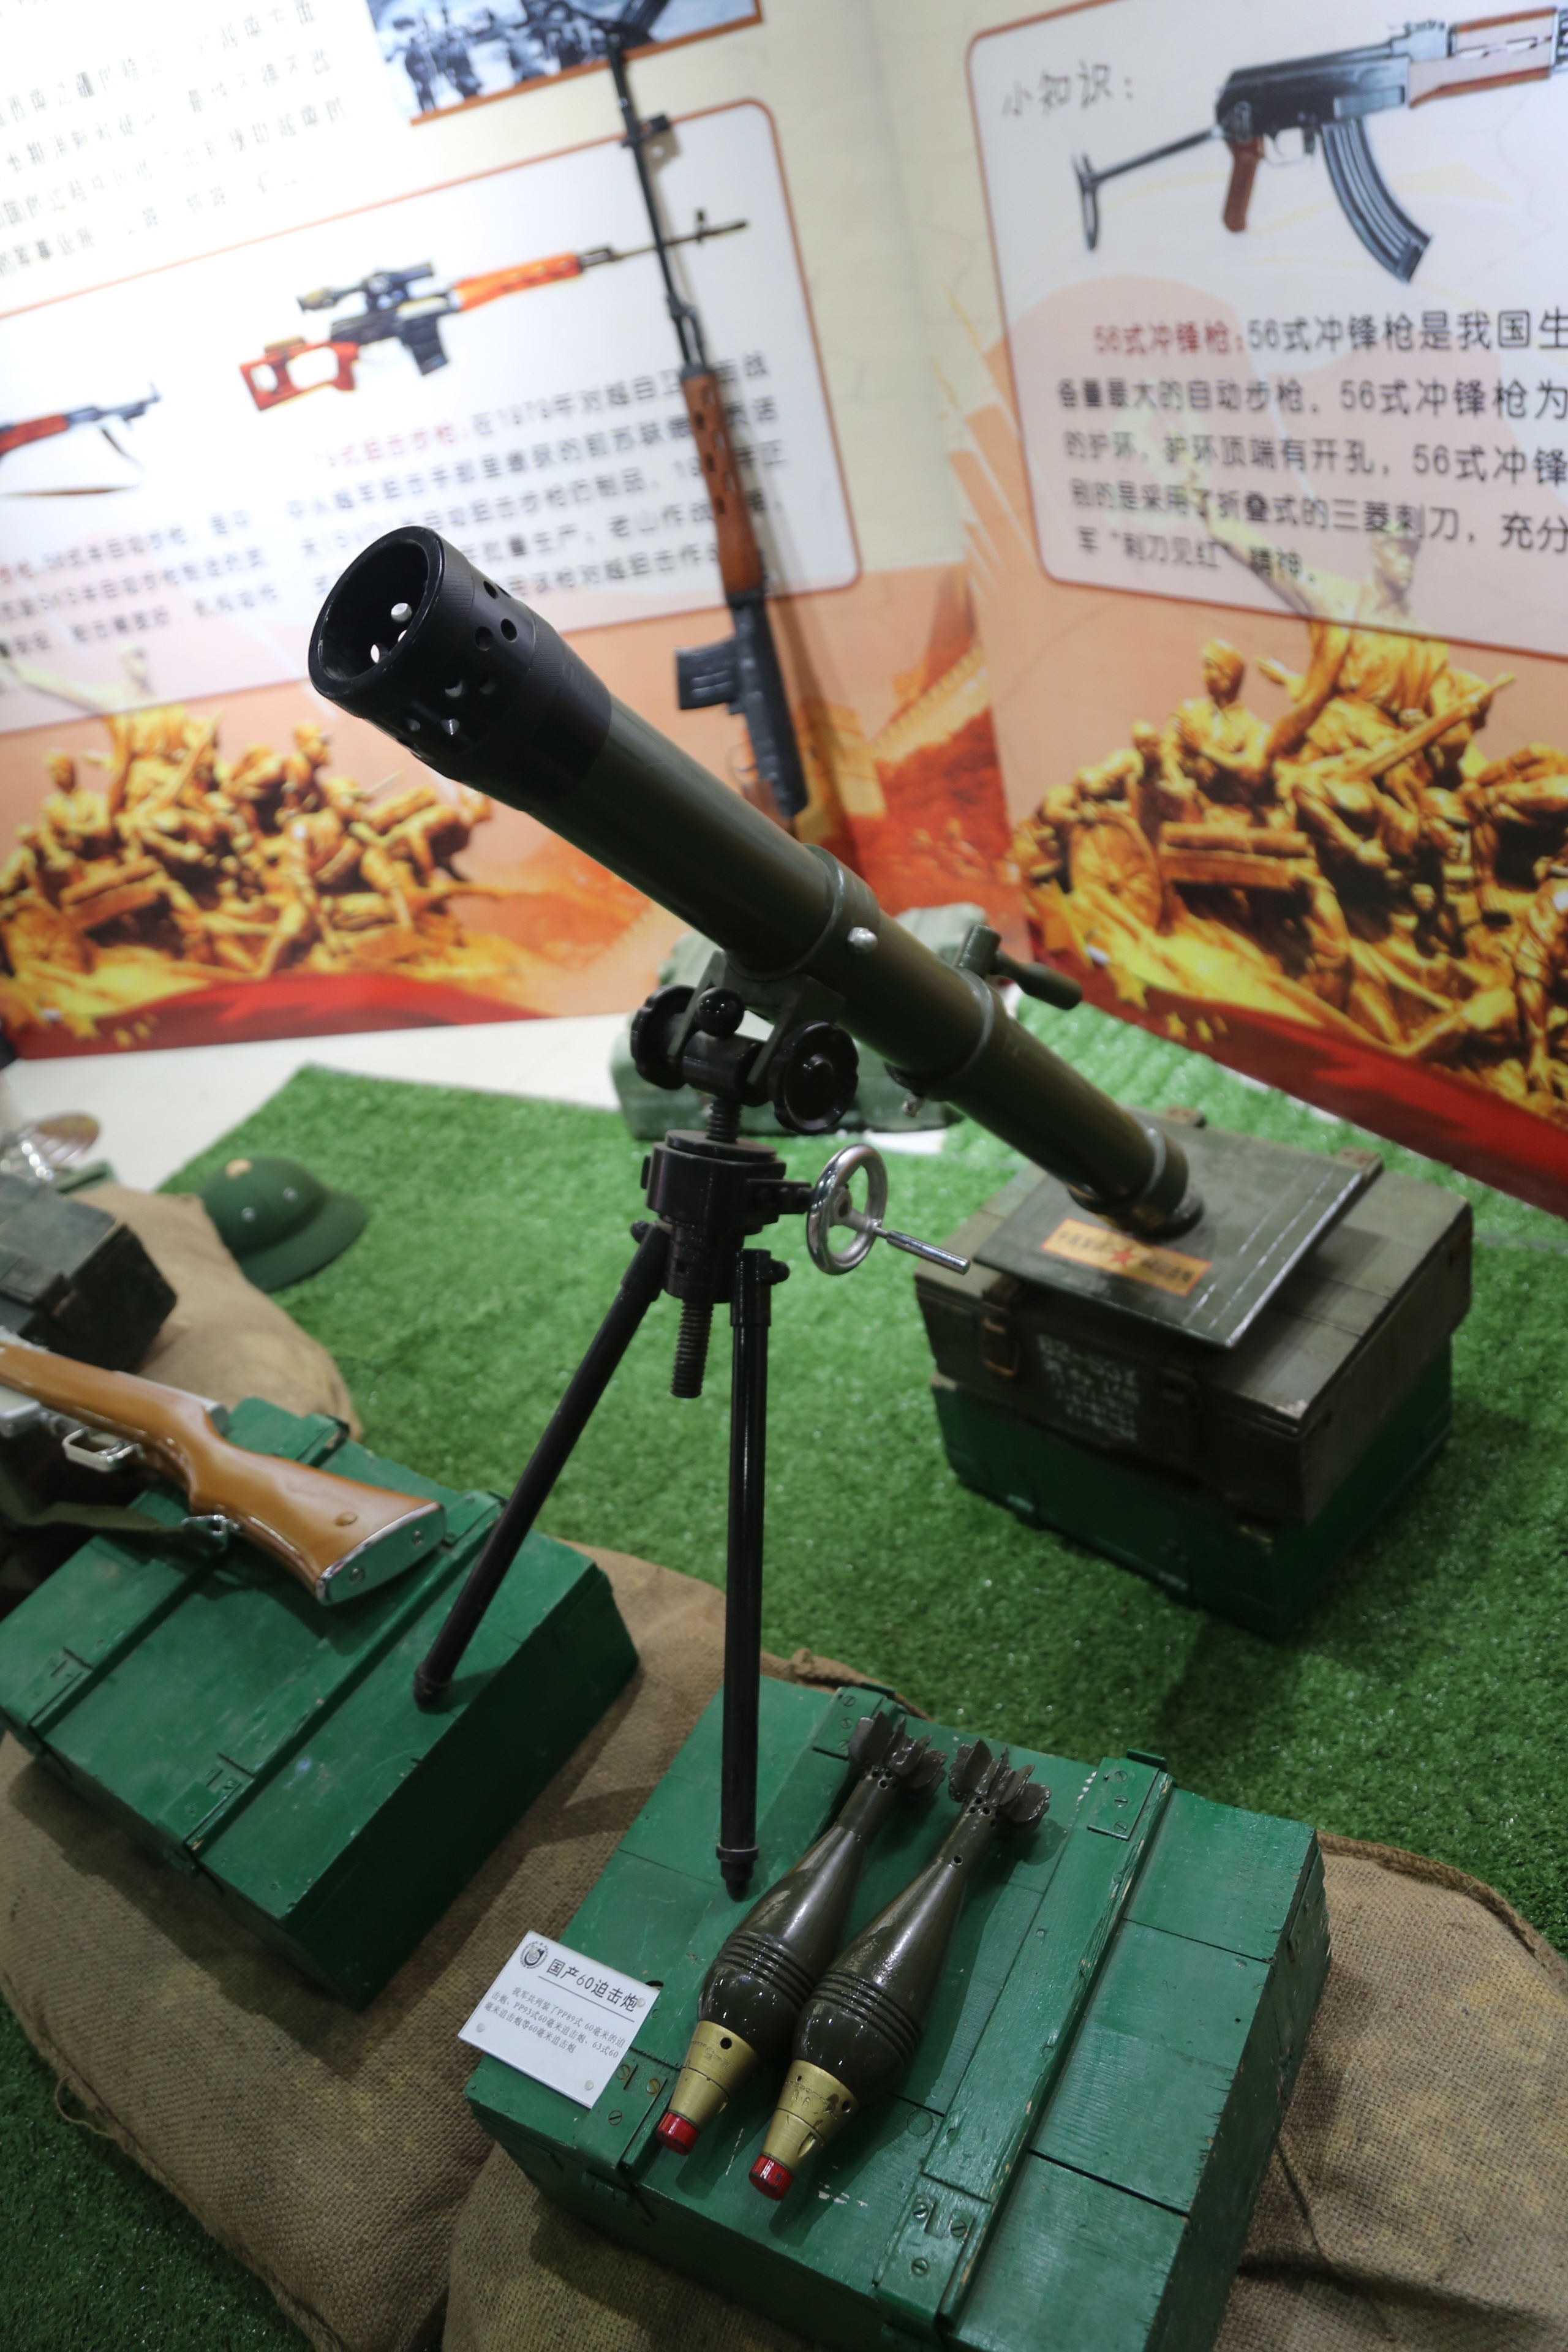 63式60毫米迫击炮是中国制造,60年代初期研制定型的60毫米轻型迫击炮